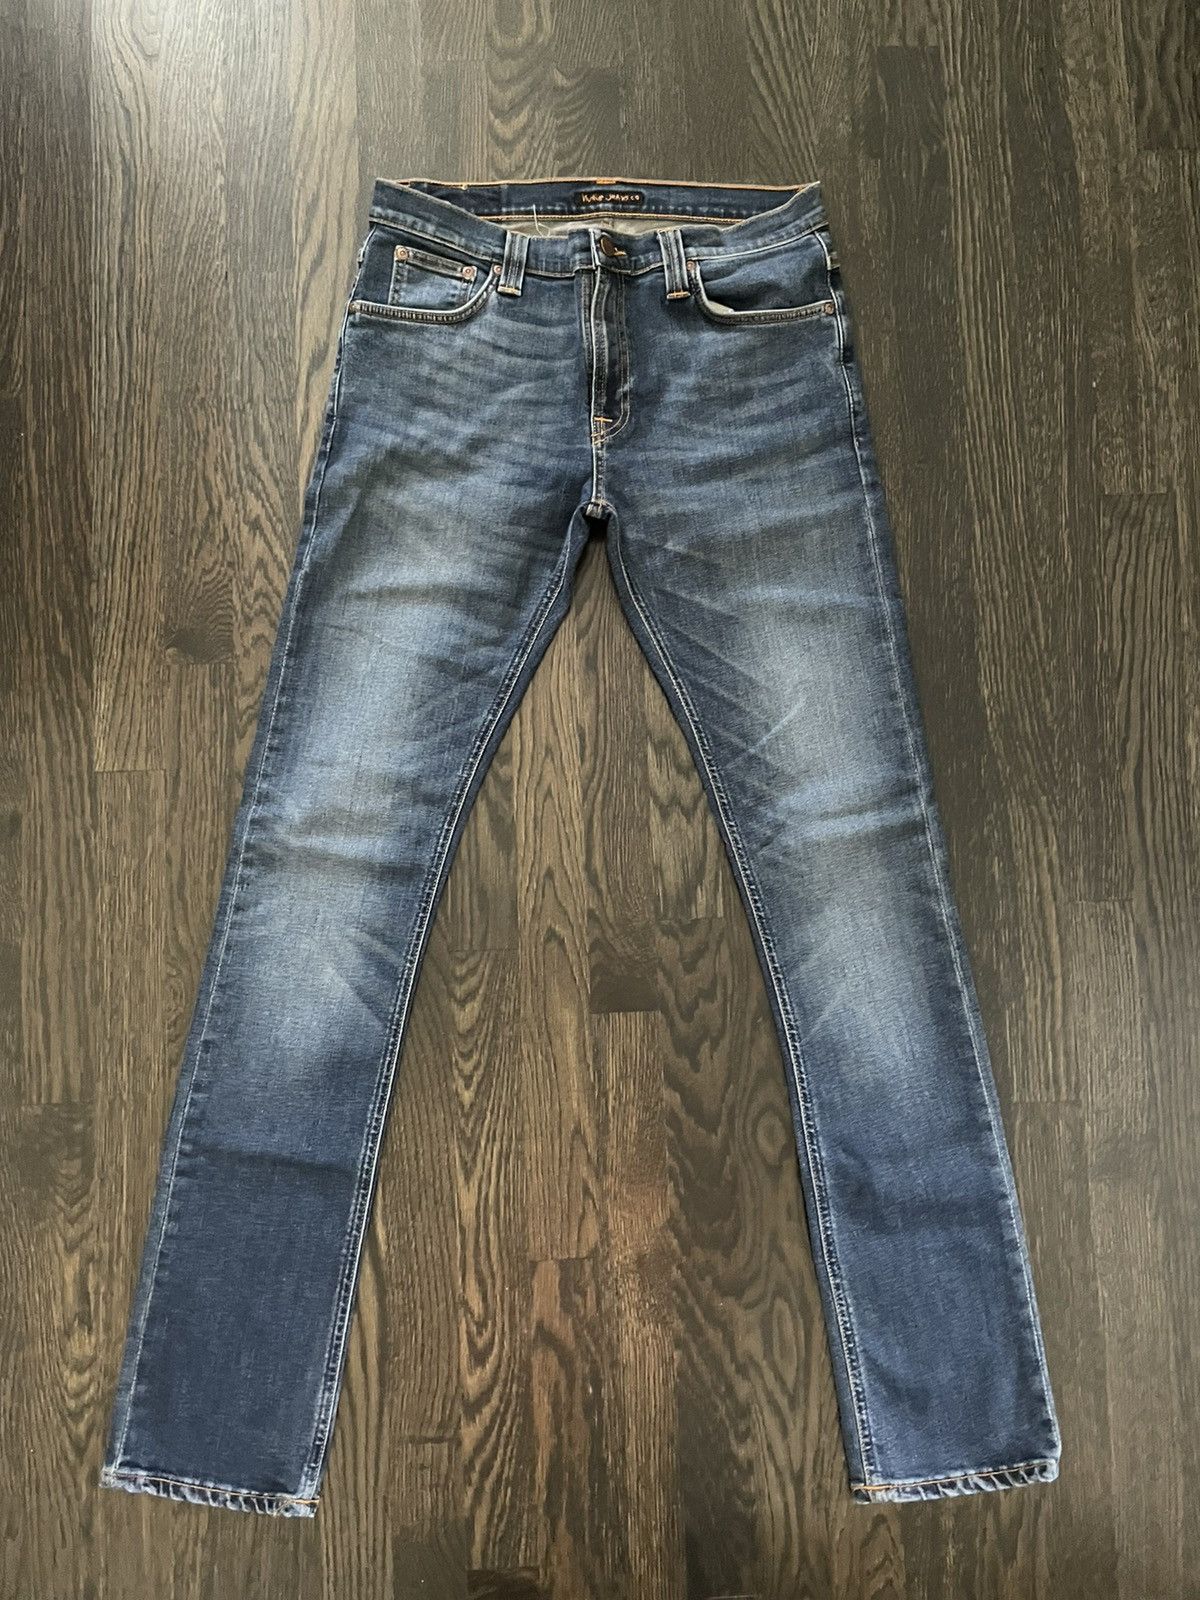 Nudie Jeans Nudie jeans early 2000s denim | Grailed